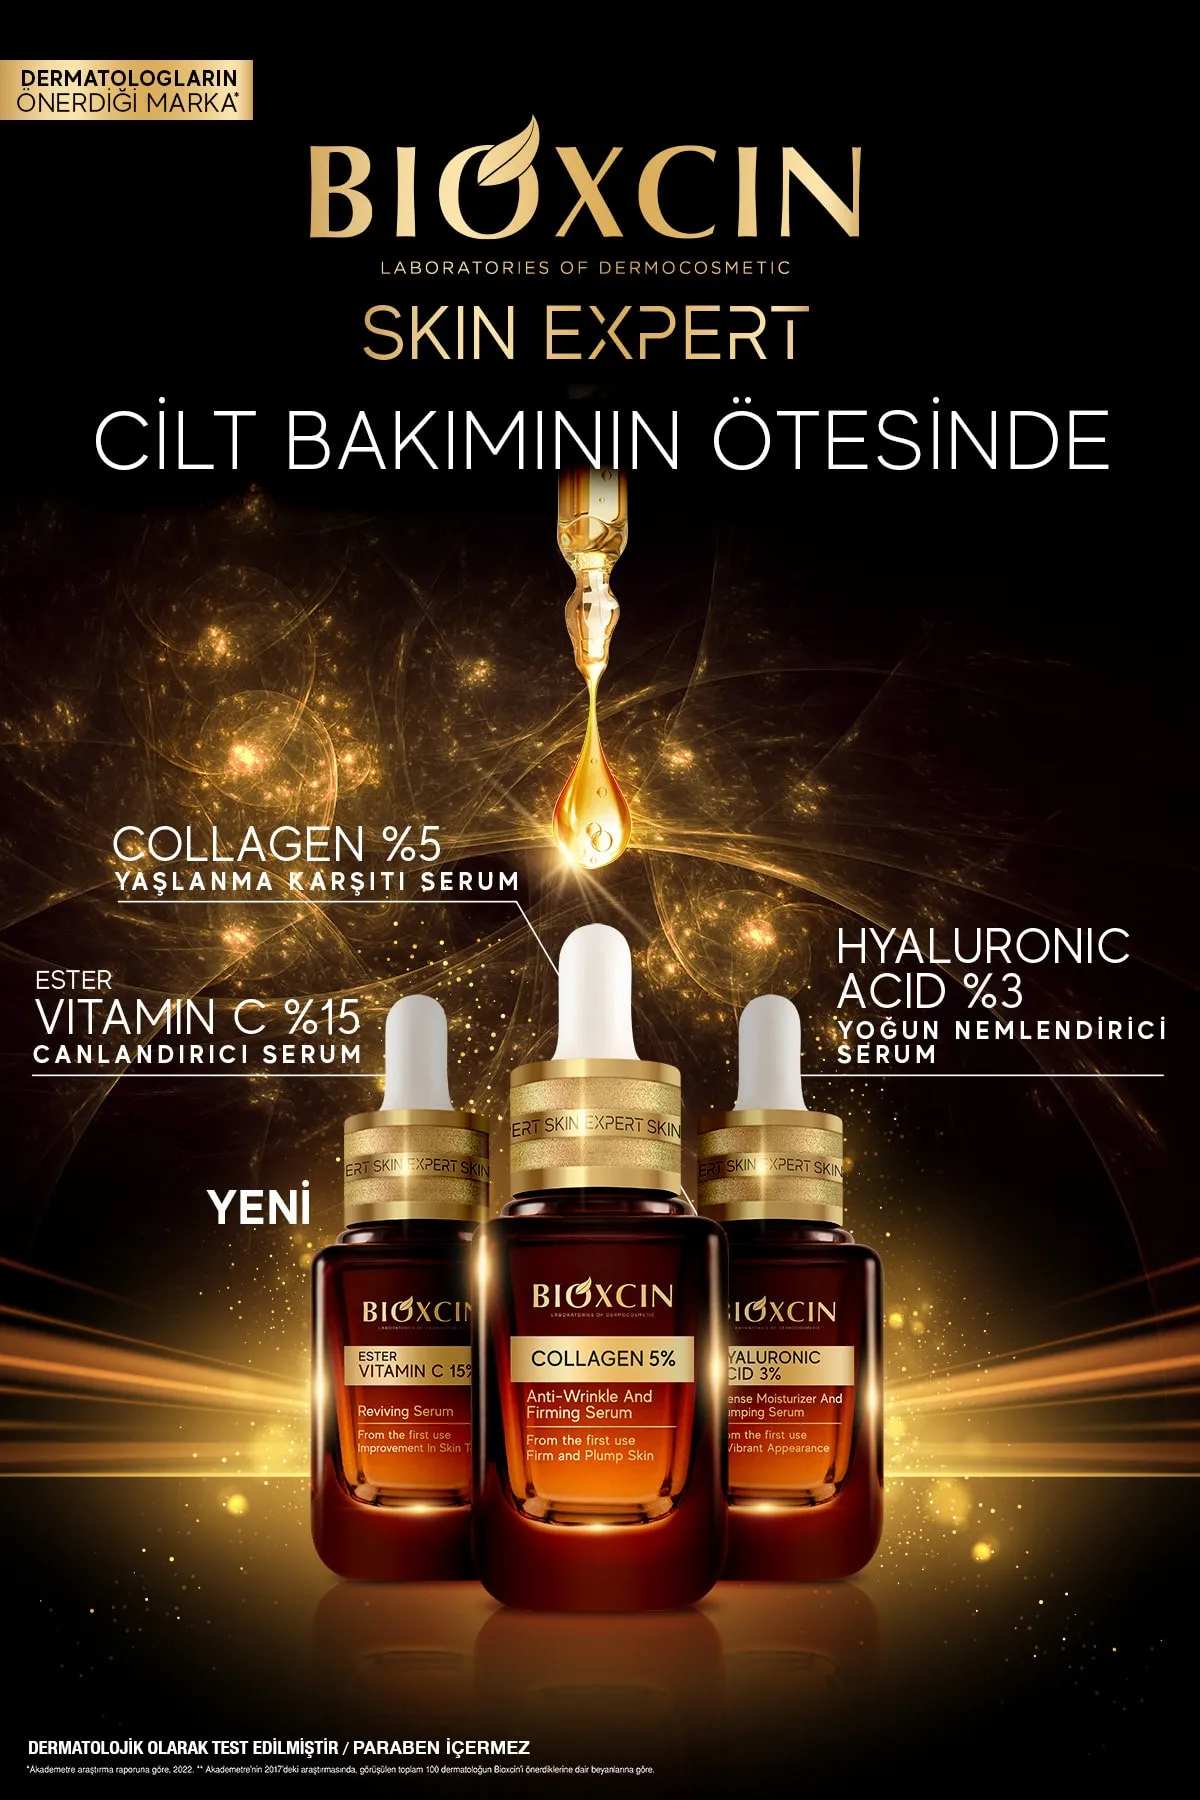 Bioxcin Skin Expert Hyaluronic Acid 3% Yoğun Nemlendirici Serum 30 ml - 6